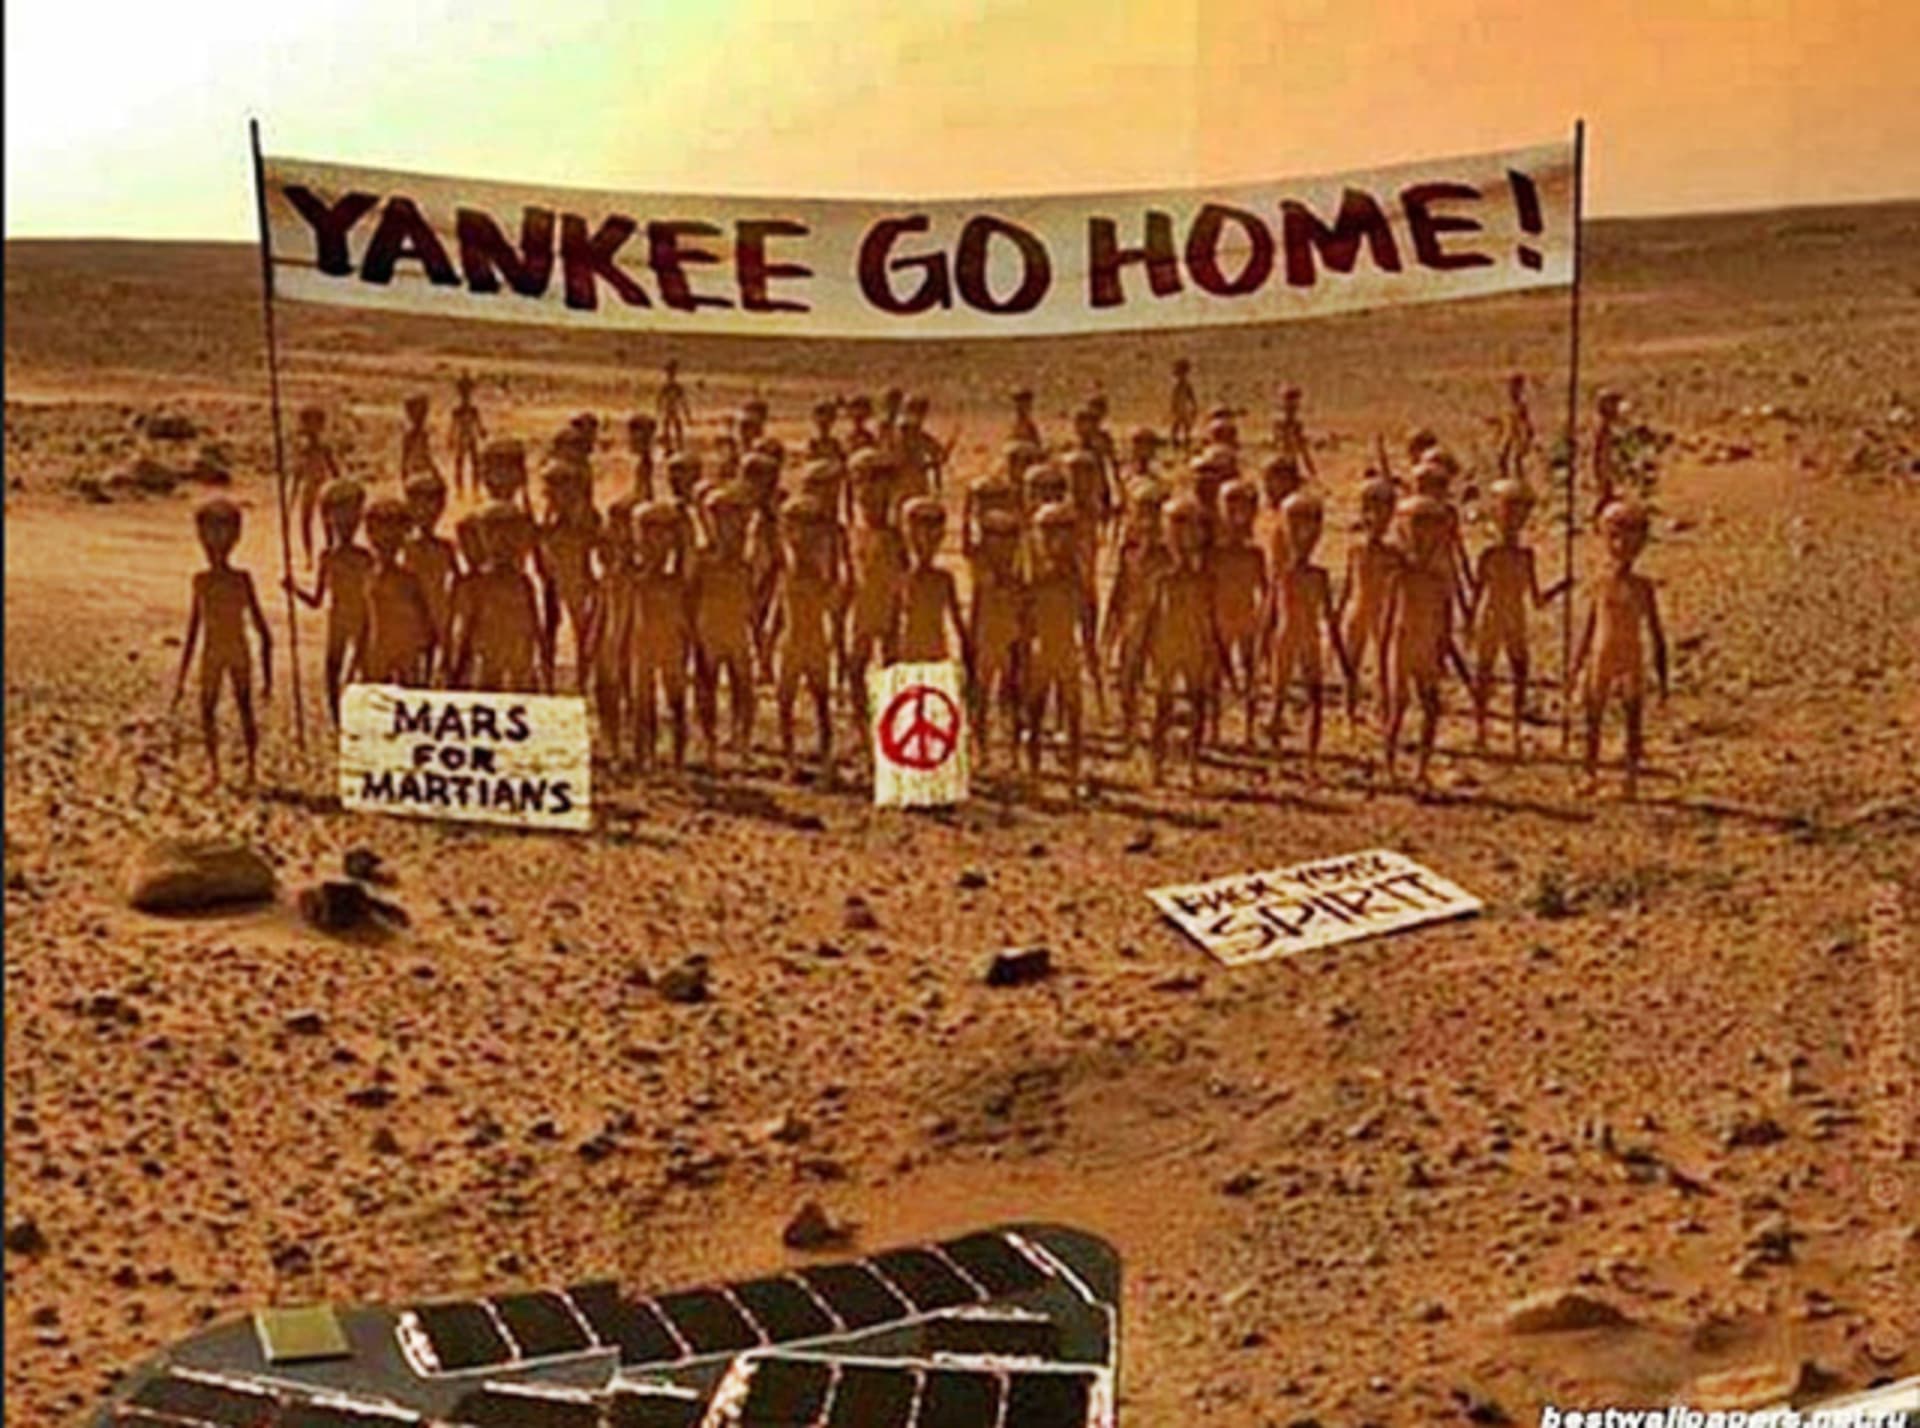 Američané, jděte pryč z Marsu!